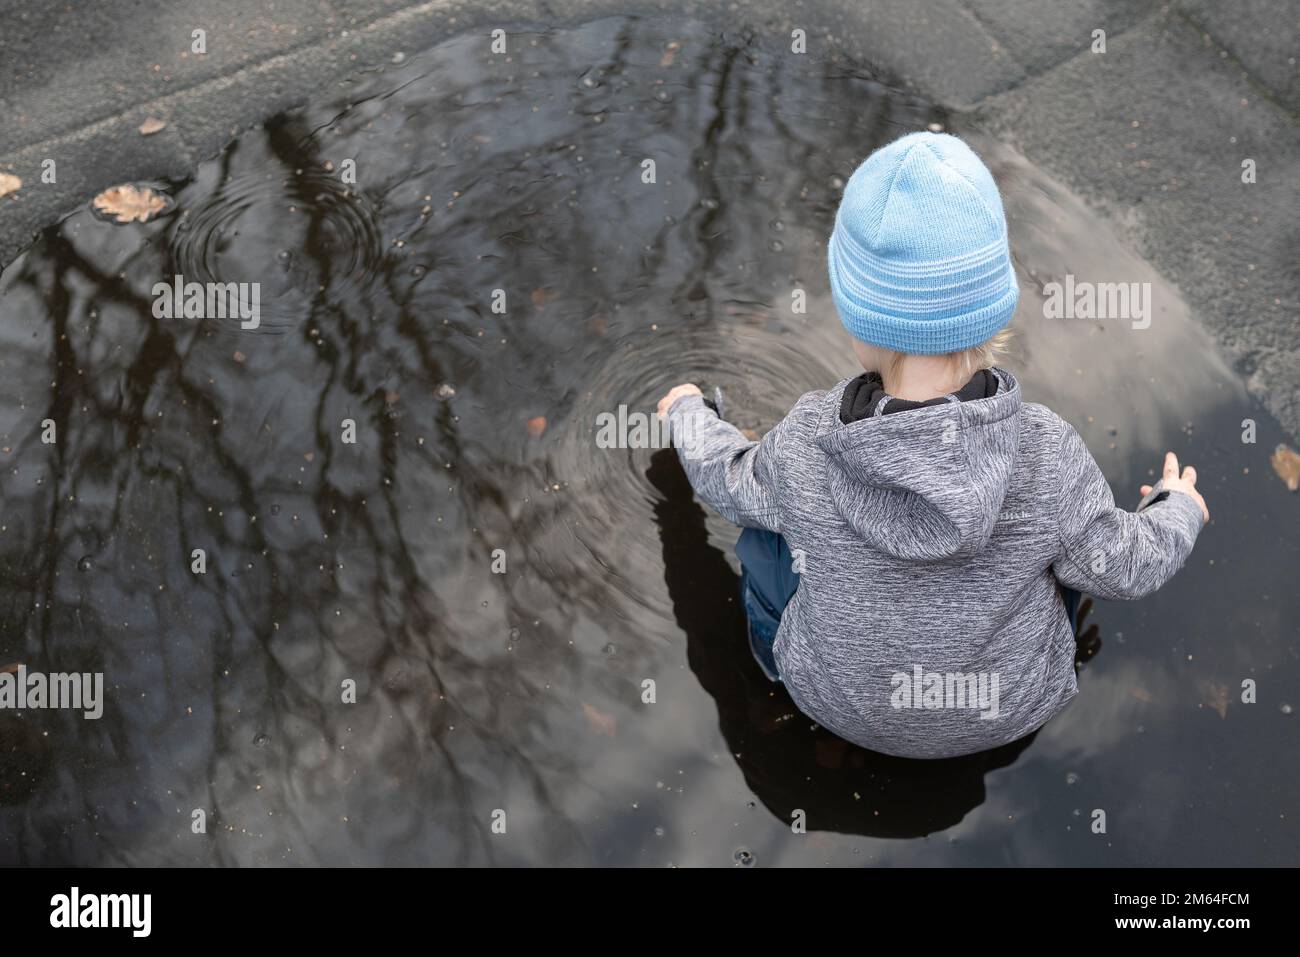 vista ad angolo alto di un bambino di due anni che gioca in una pozza d'acqua dopo la doccia a pioggia Foto Stock